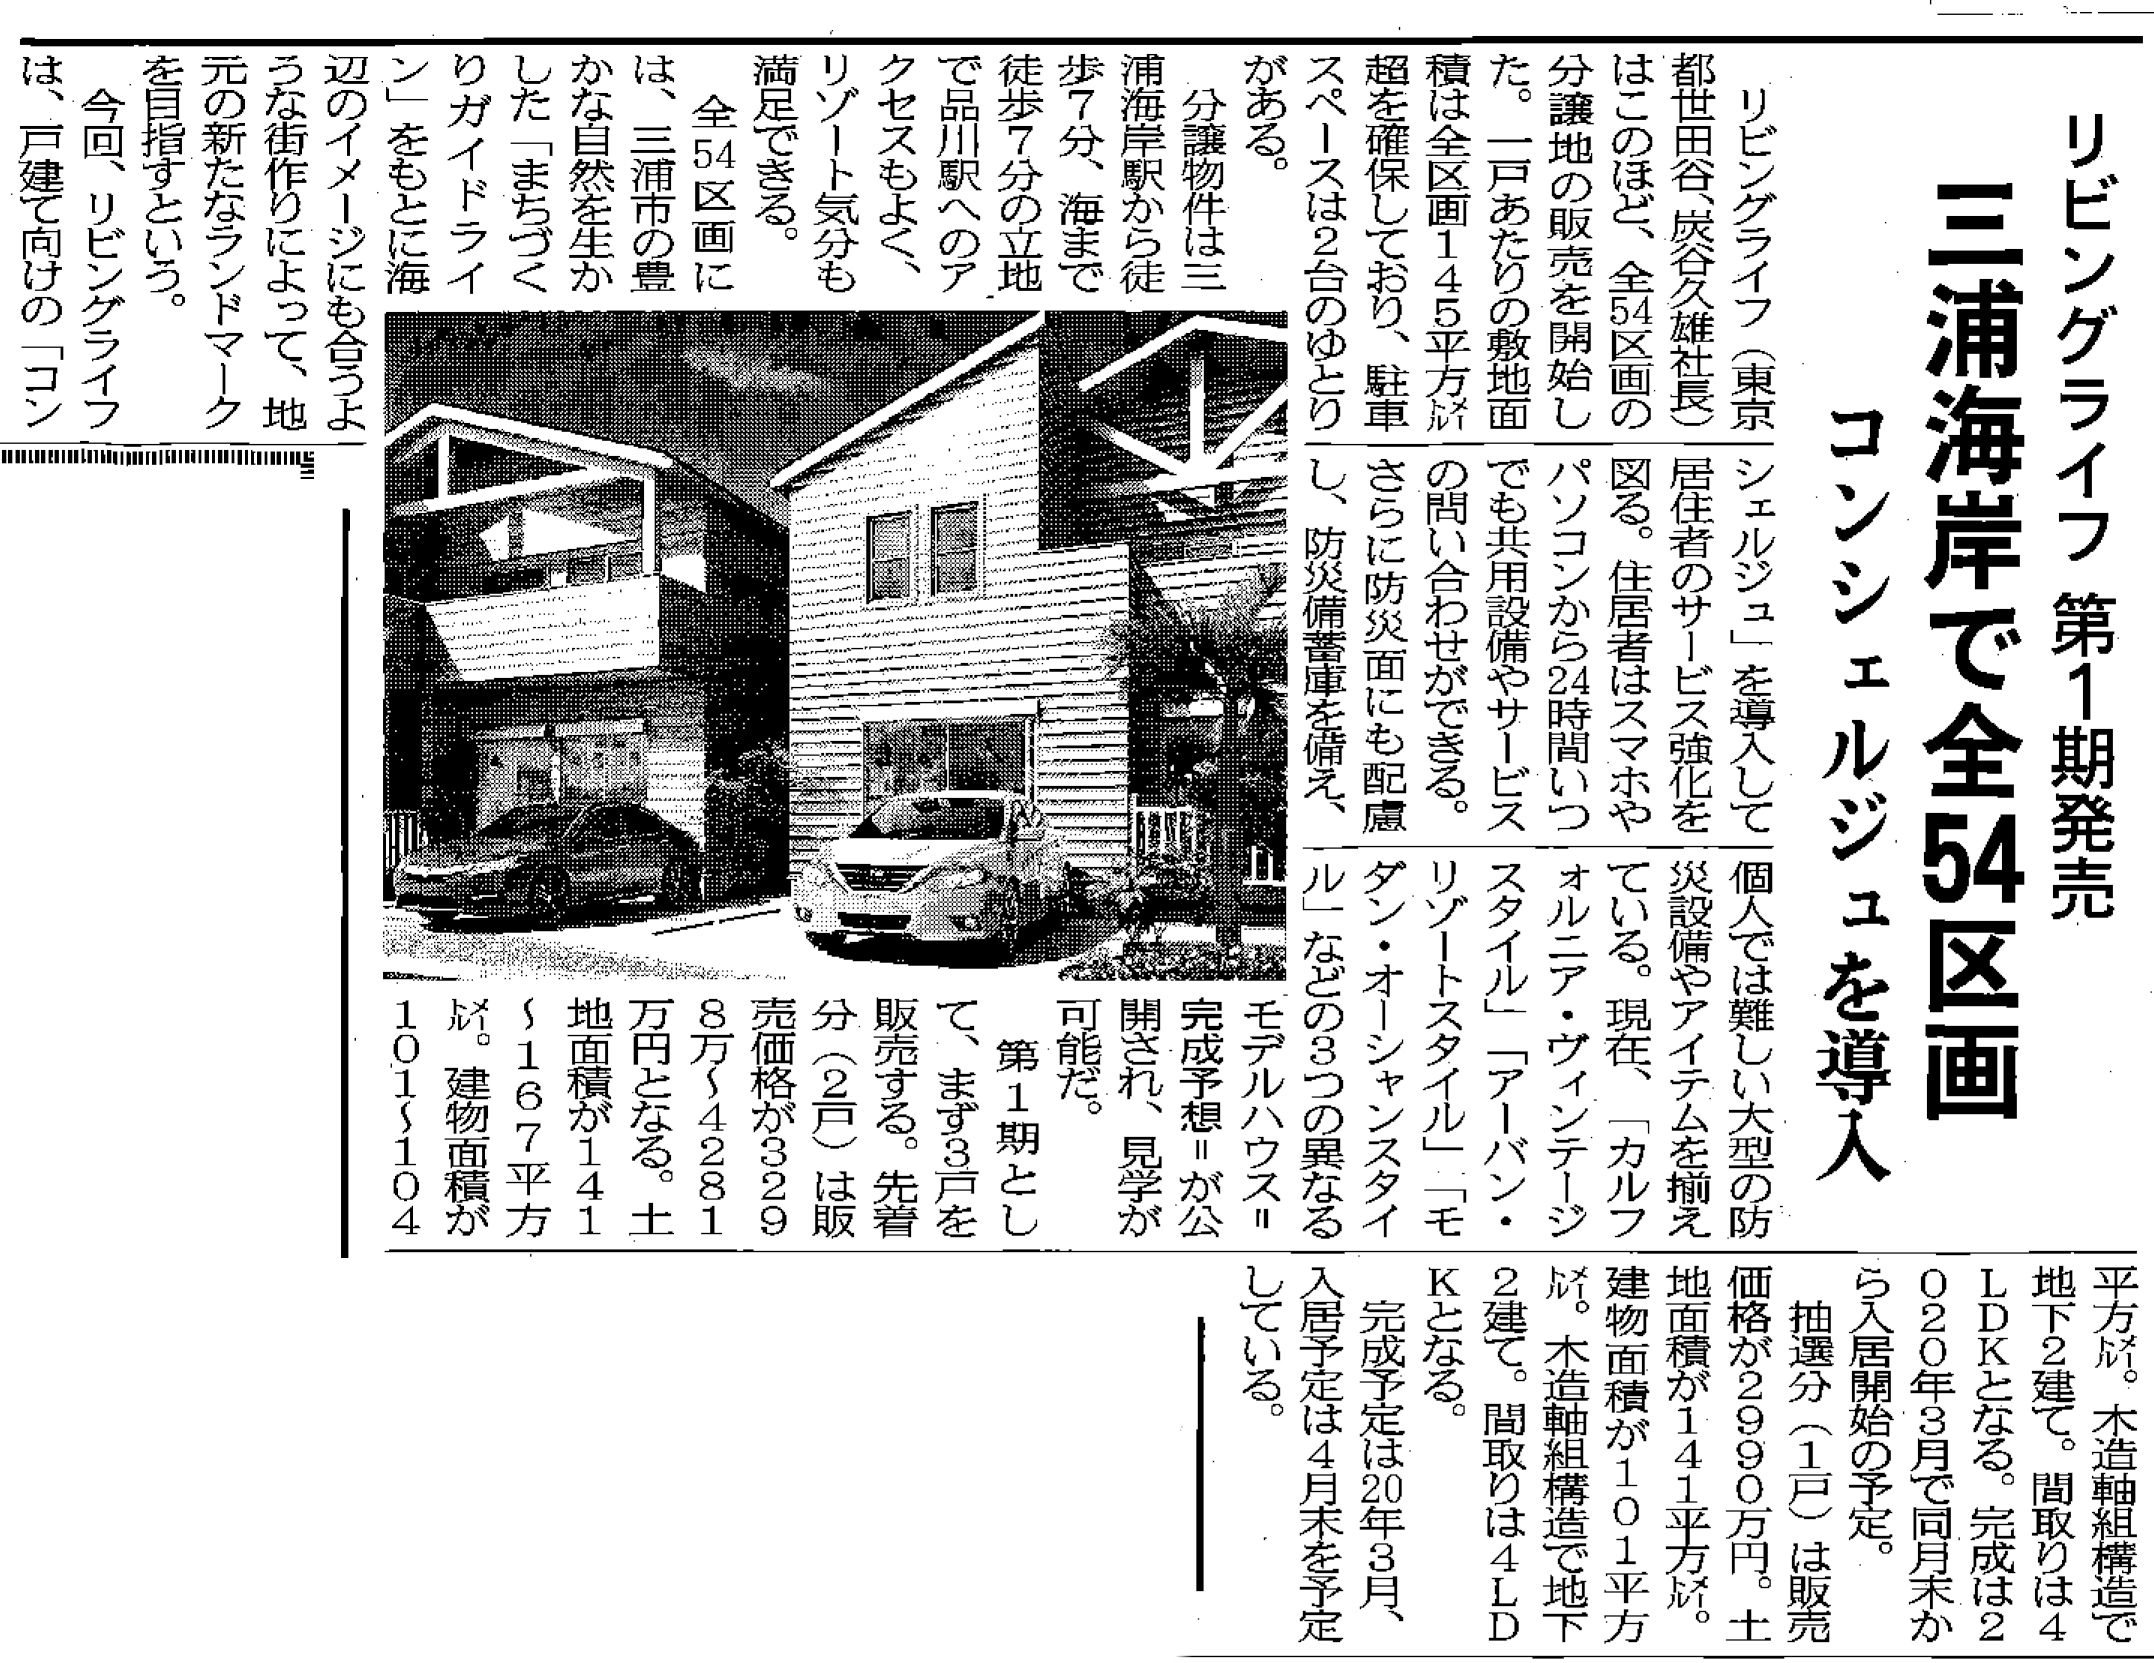 「ライフアソート三浦海岸マリン・コート」が『週刊住宅』に掲載されました